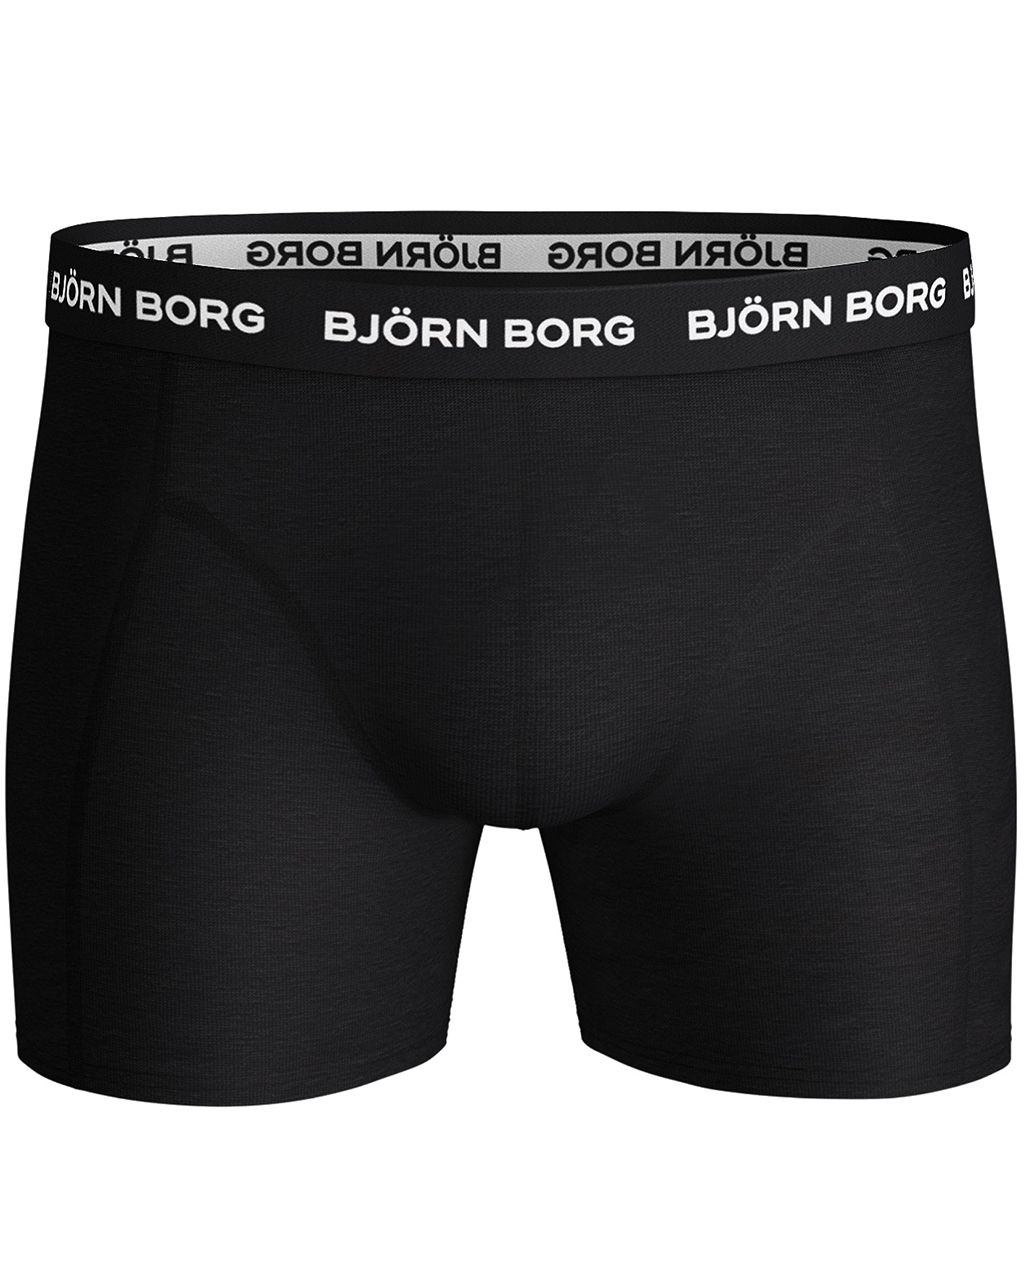 Björn Borg Boxershort 3-pack Zwart 051822-001-L